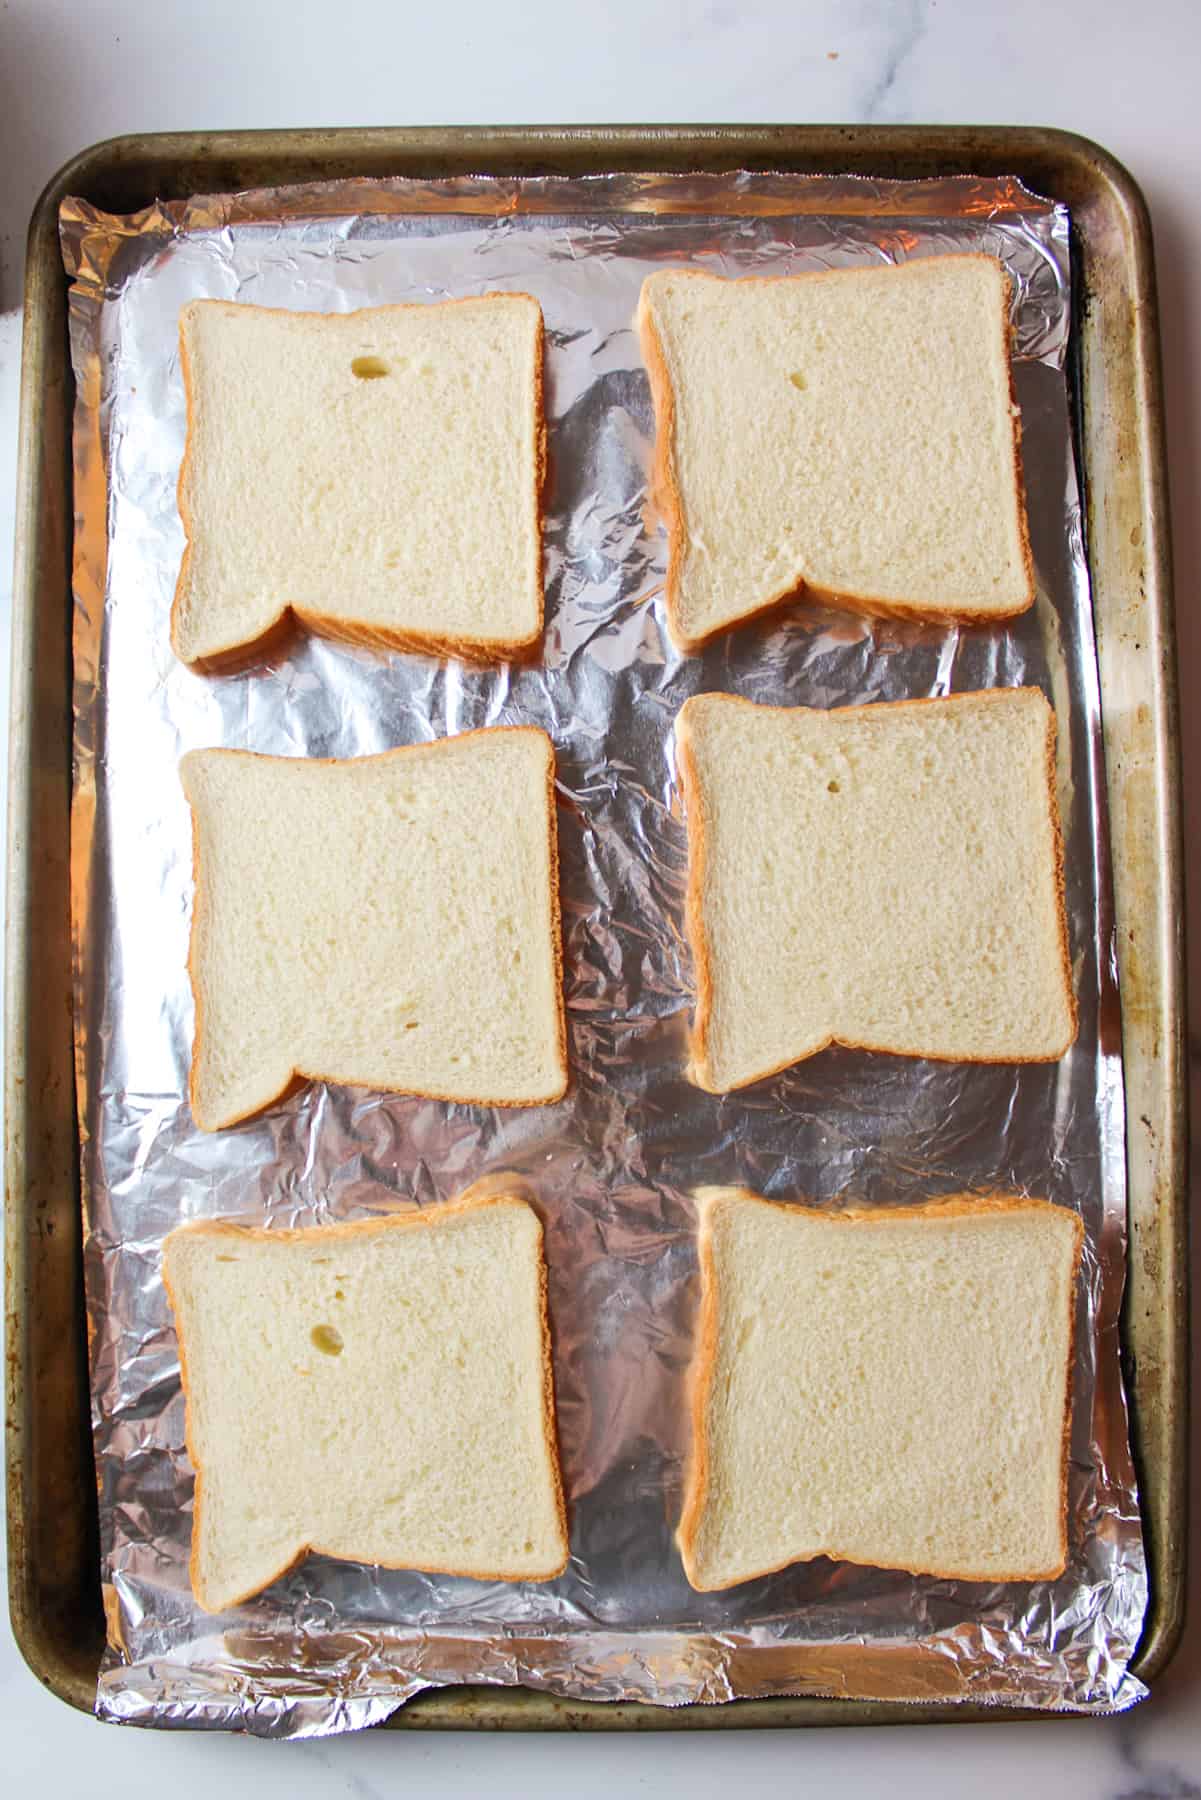 6 slices of sandwich bread on baking sheet